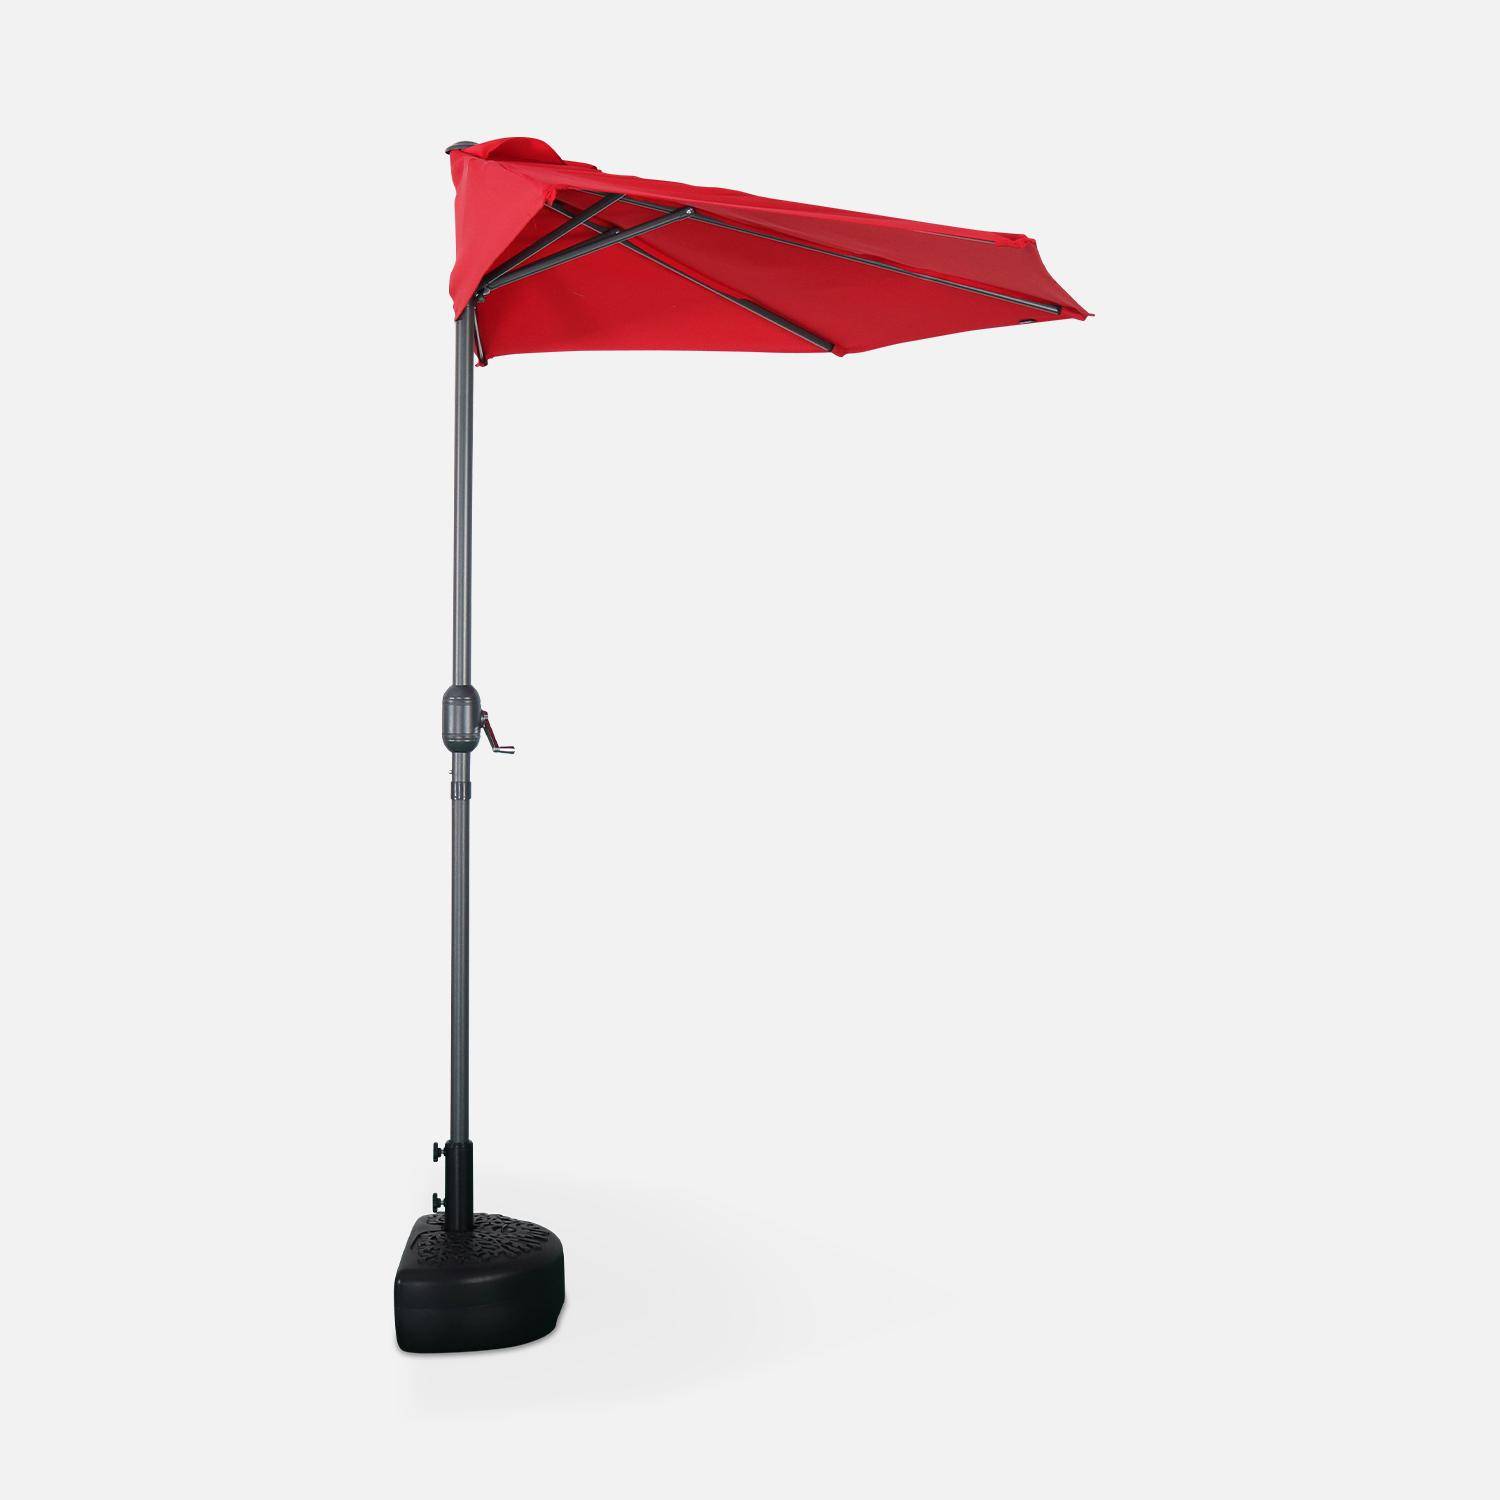  Parasol para balcón Ø250cm  – CALVI – Pequeño parasol recto, mástil en aluminio con manivela, tela color rojo,sweeek,Photo4